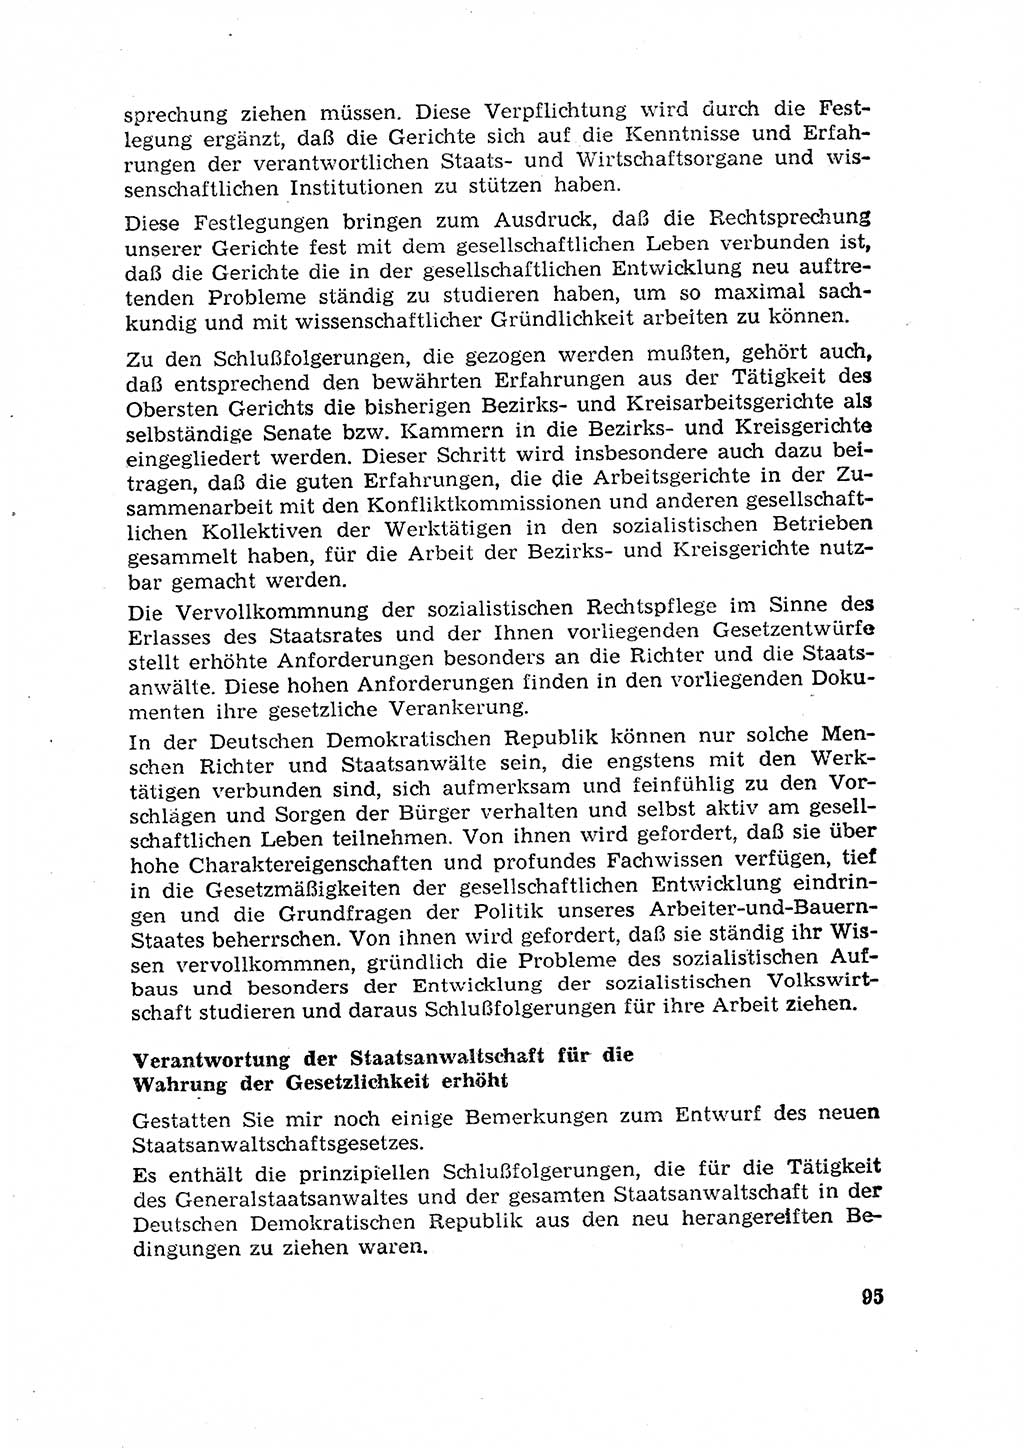 Rechtspflegeerlaß [Deutsche Demokratische Republik (DDR)] 1963, Seite 95 (R.-Pfl.-Erl. DDR 1963, S. 95)